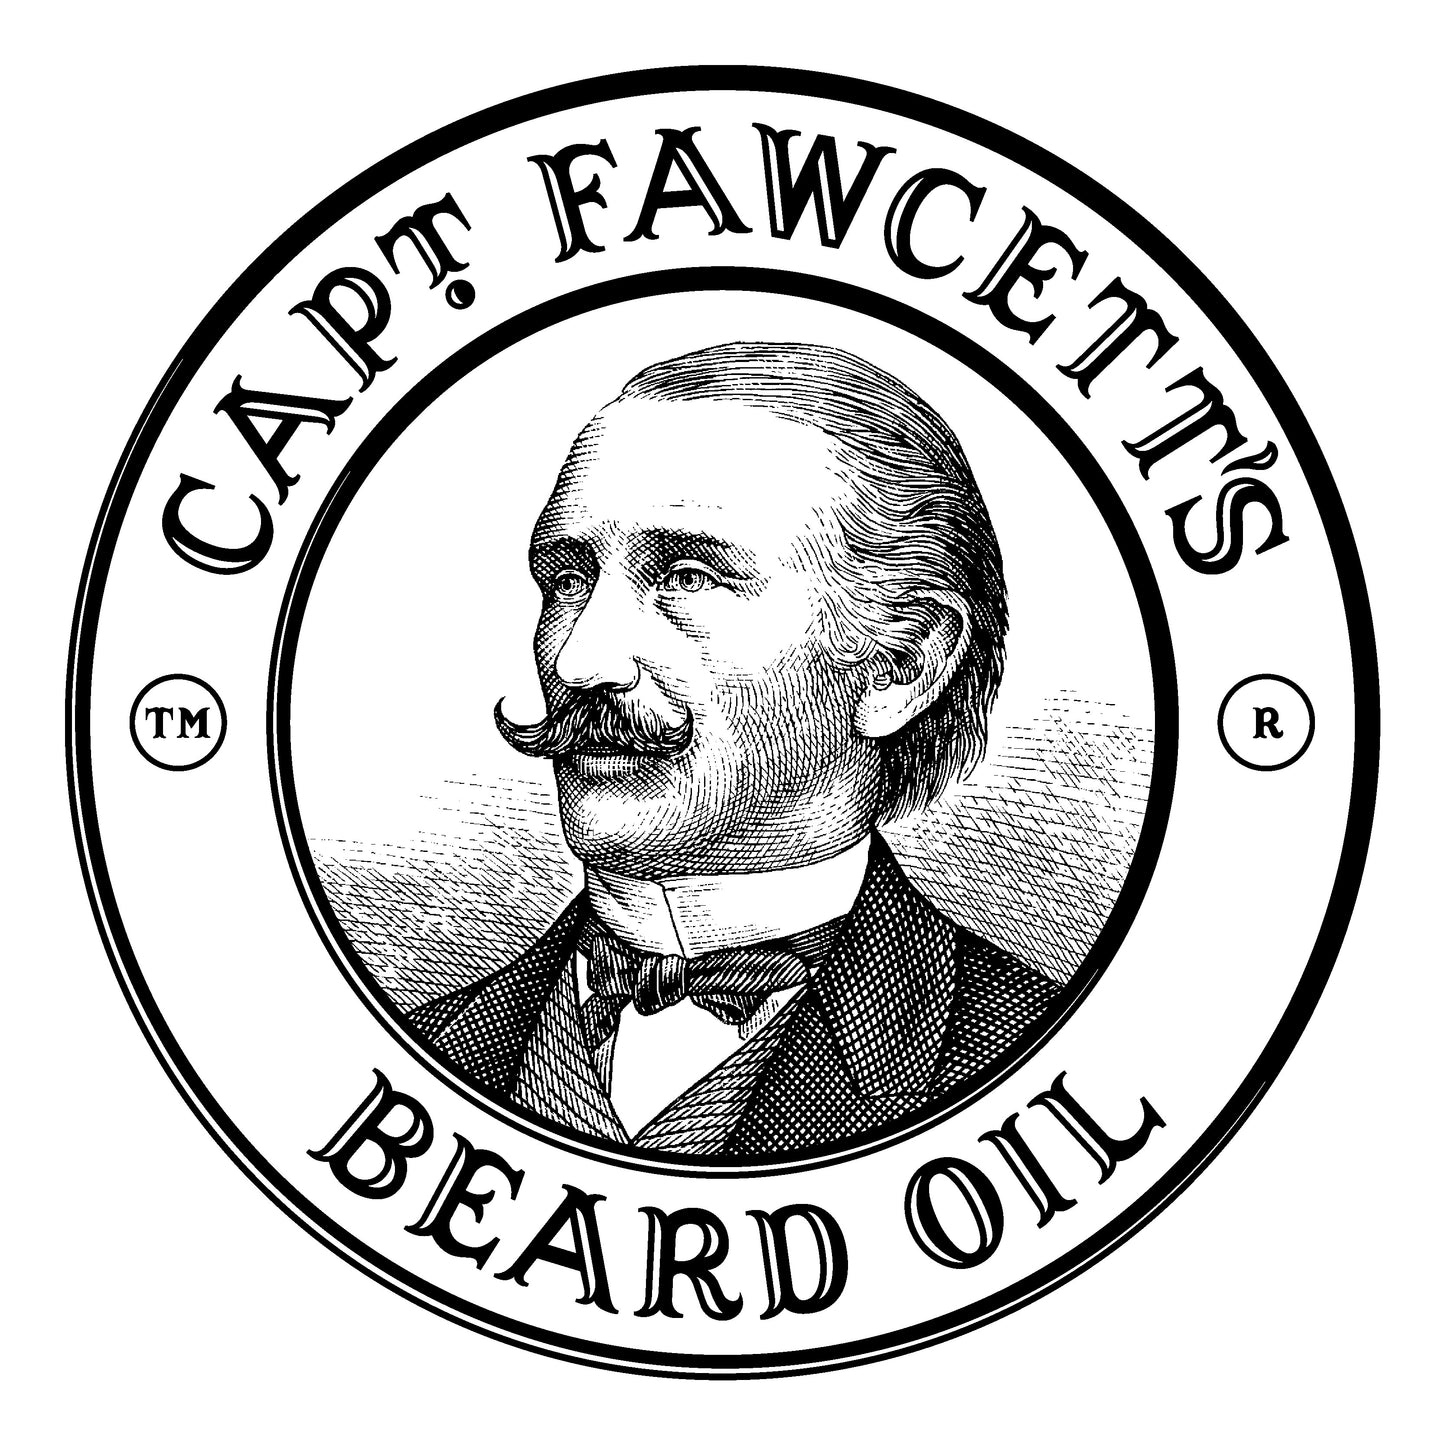 Captain Fawcett Beard Oil The Gentleman's Tipply Whisky Travel - NEW 10ml